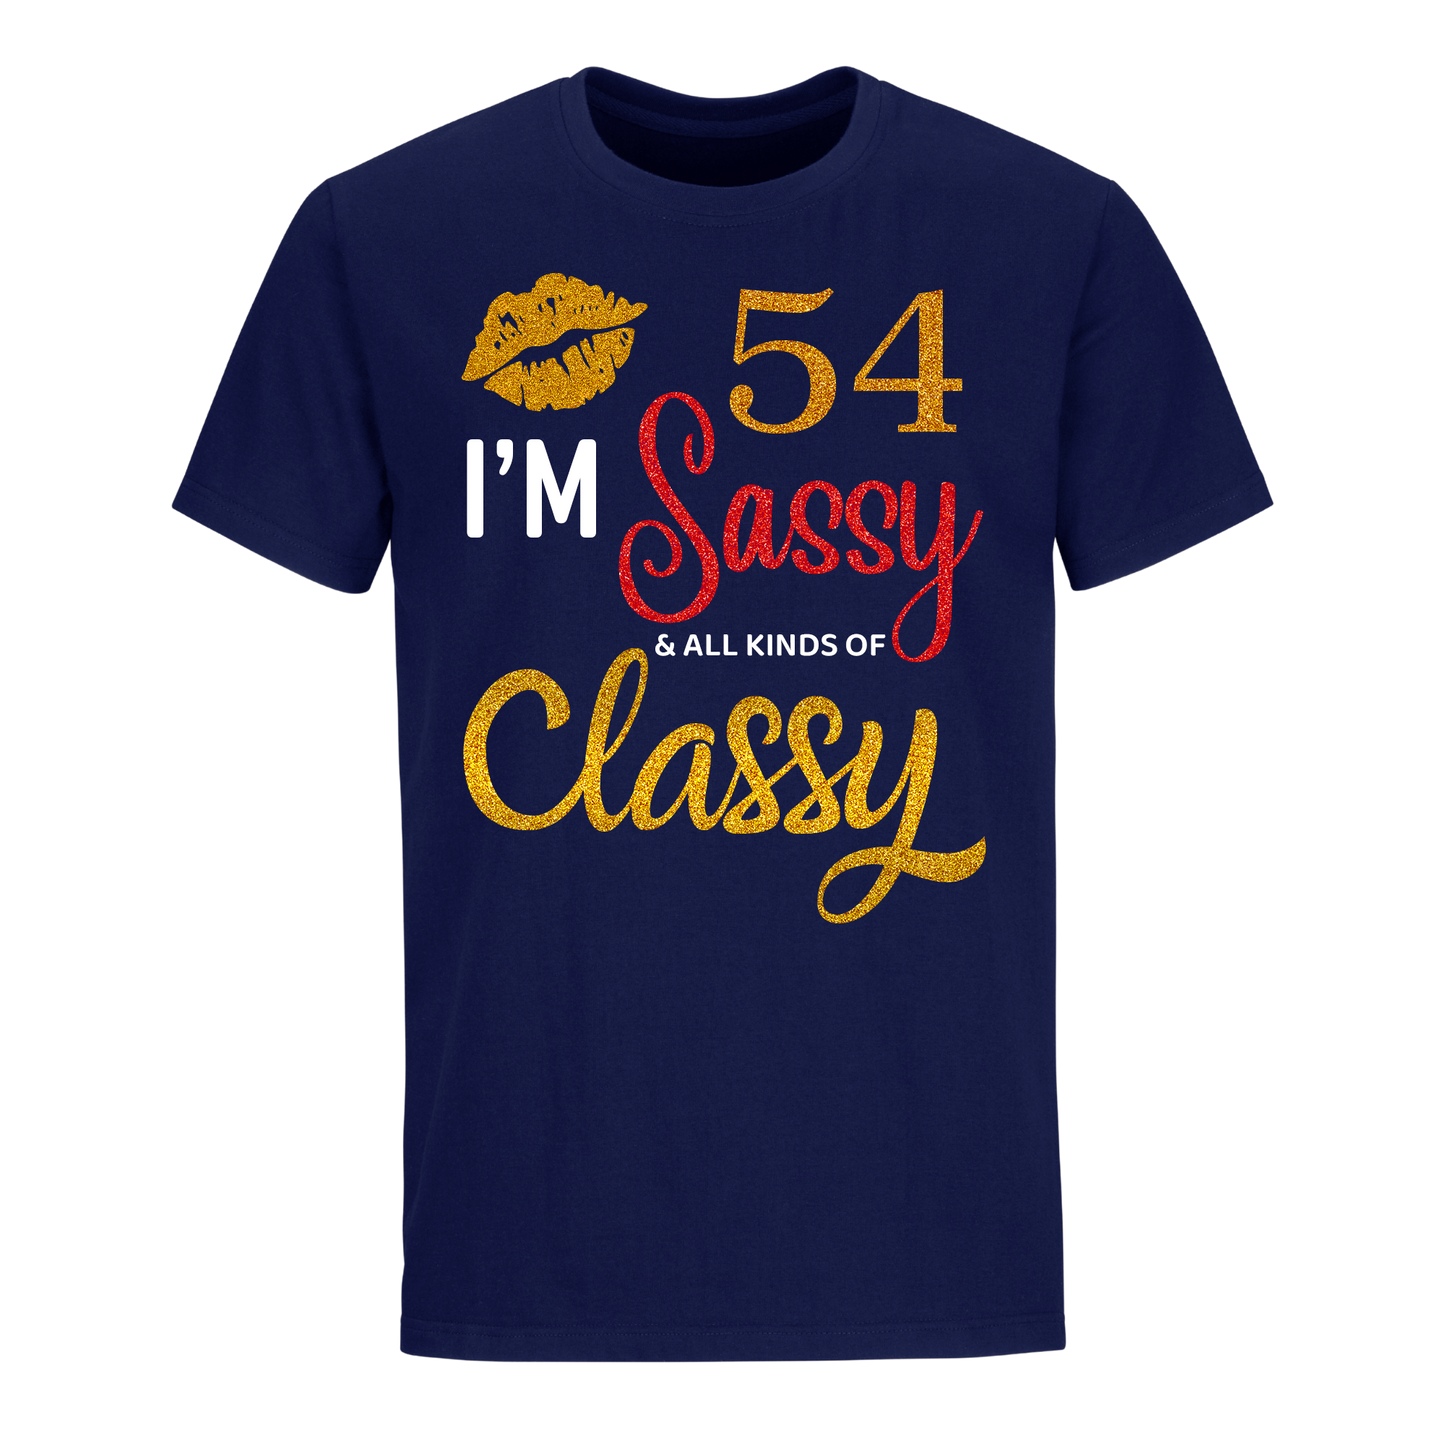 I'M 54 SASSY SHIRT